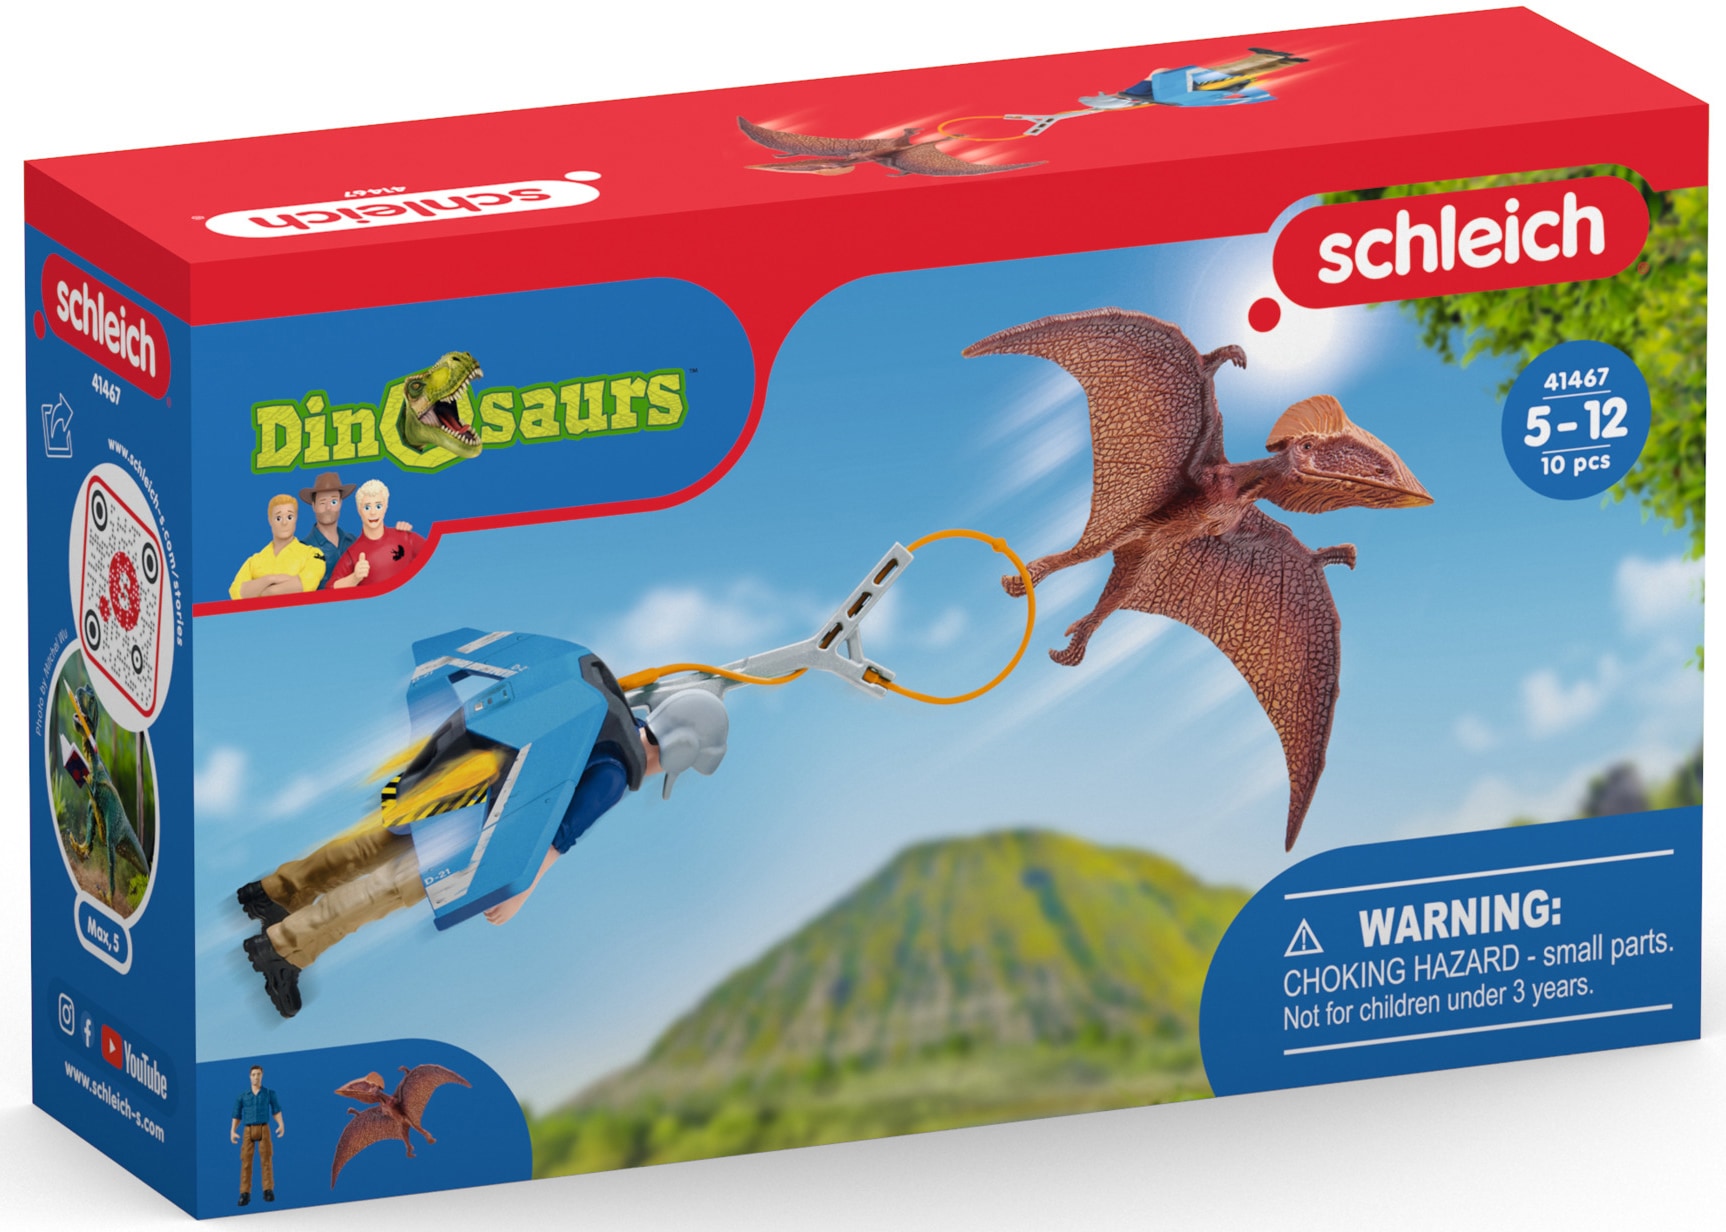 Schleich® Spielfigur »DINOSAURS, Jetpack Verfolgung (41467)«, mit besonderem Flugsaurier